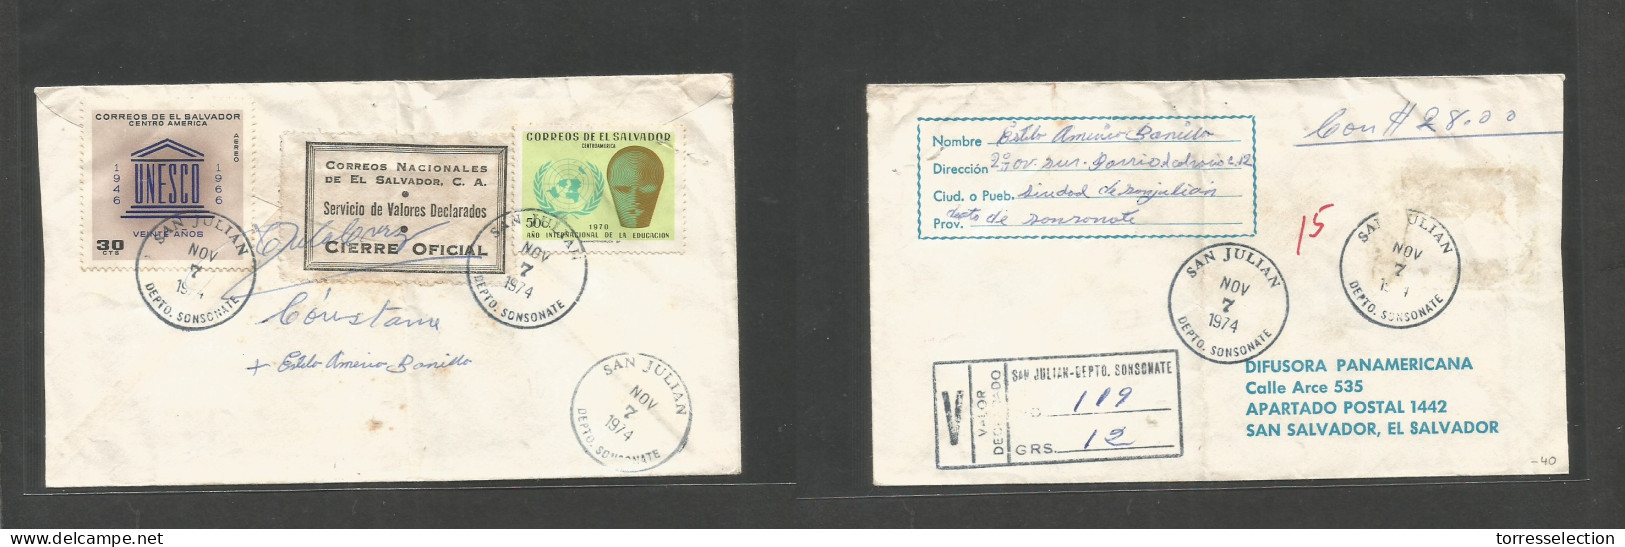 SALVADOR, EL. 1974 (7 Nov) San Julian - San Salvador. Registered Reverse Multifkd Insured $28 Envelope, With Reverse Cie - El Salvador